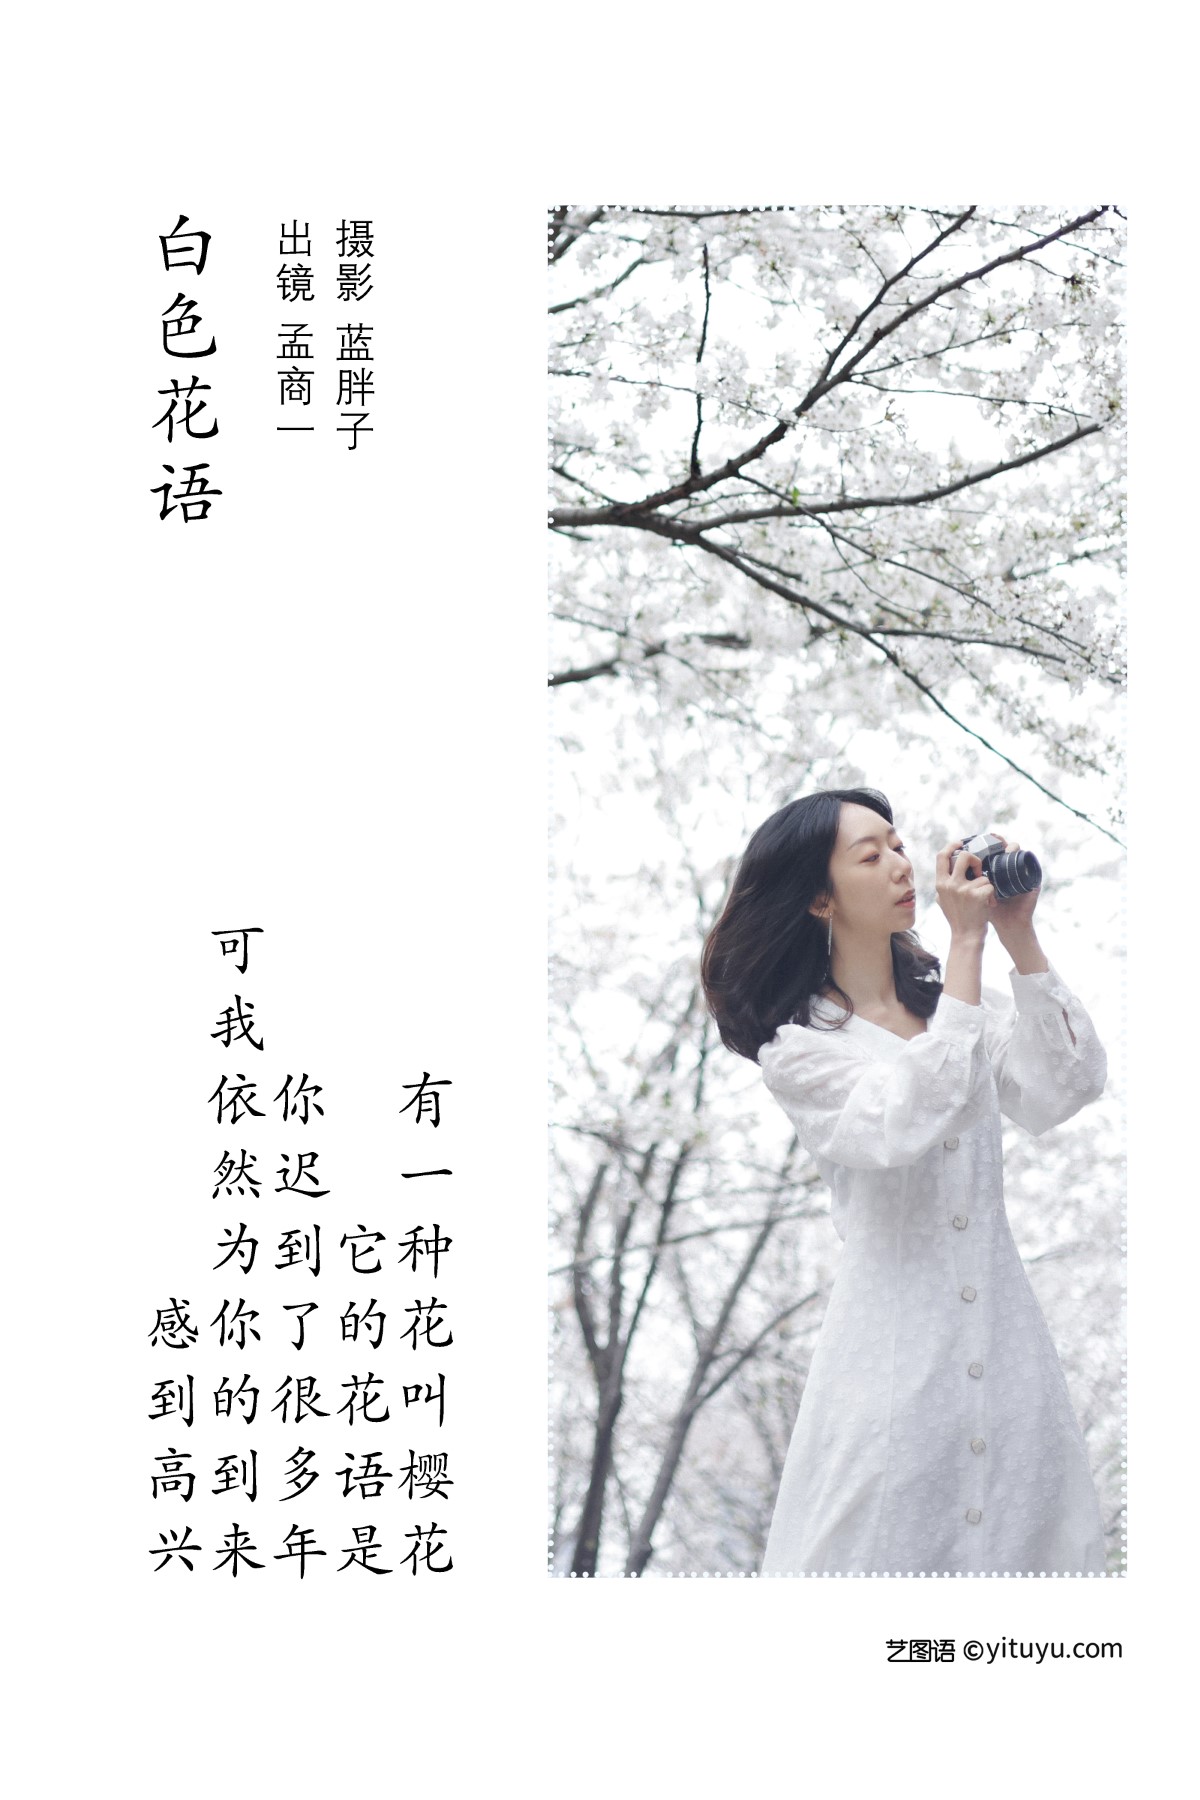 YiTuYu艺图语 Vol 1858 Meng Shang Yi 0001 6745316963.jpg